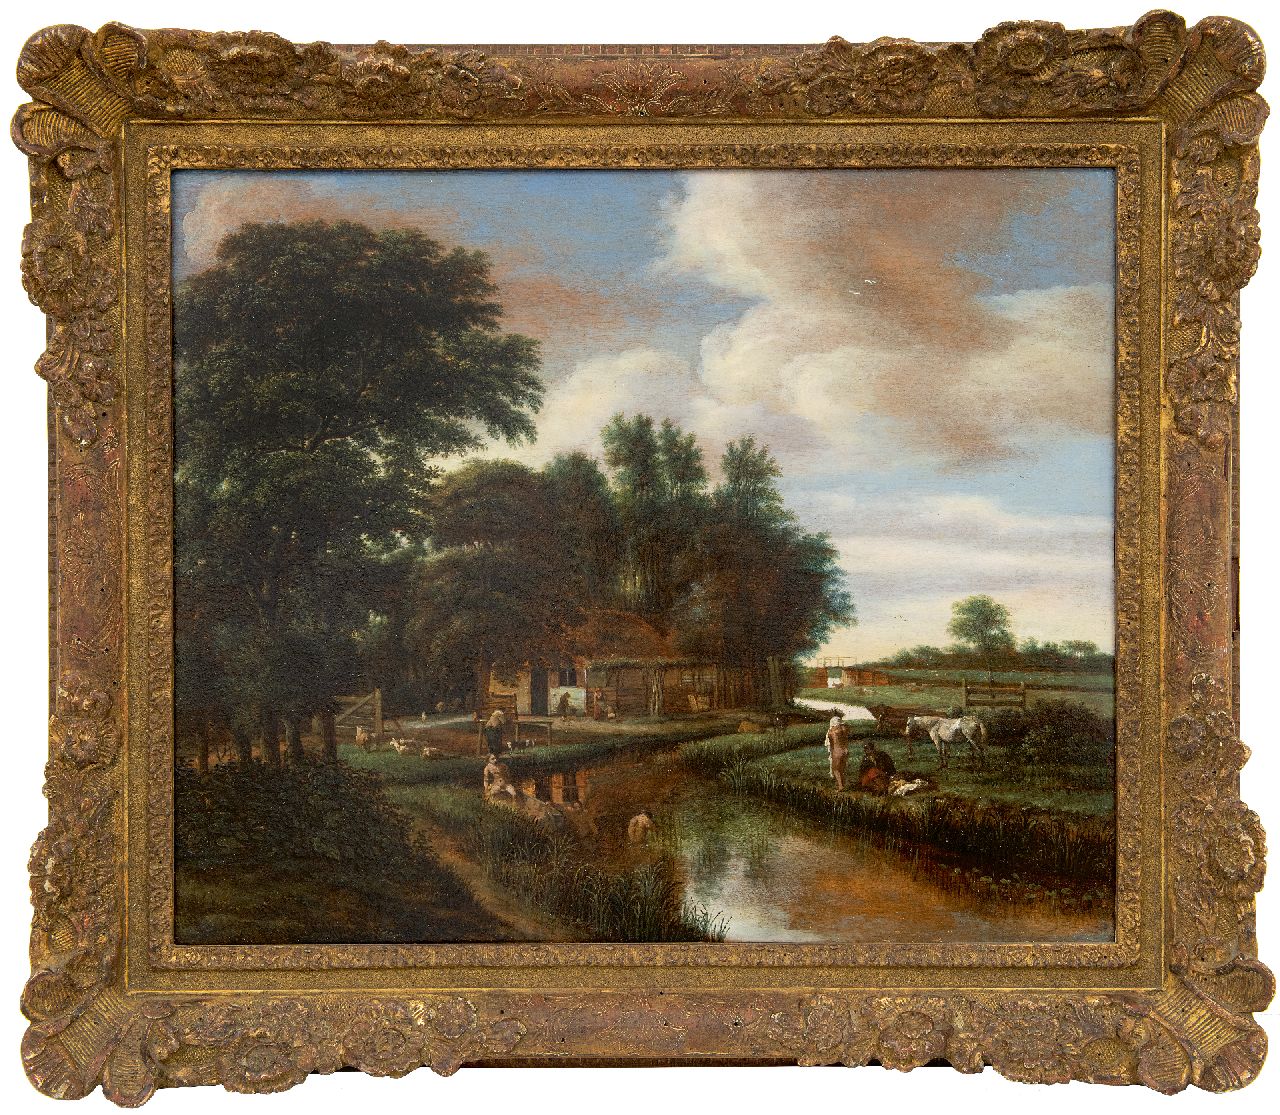 Asch P.J. van | 'Pieter' Jansz. van Asch | Schilderijen te koop aangeboden | Naakte baders in een riviertje nabij een boerderij, olieverf op paneel 42,0 x 51,5 cm, gesigneerd linksonder met monogram